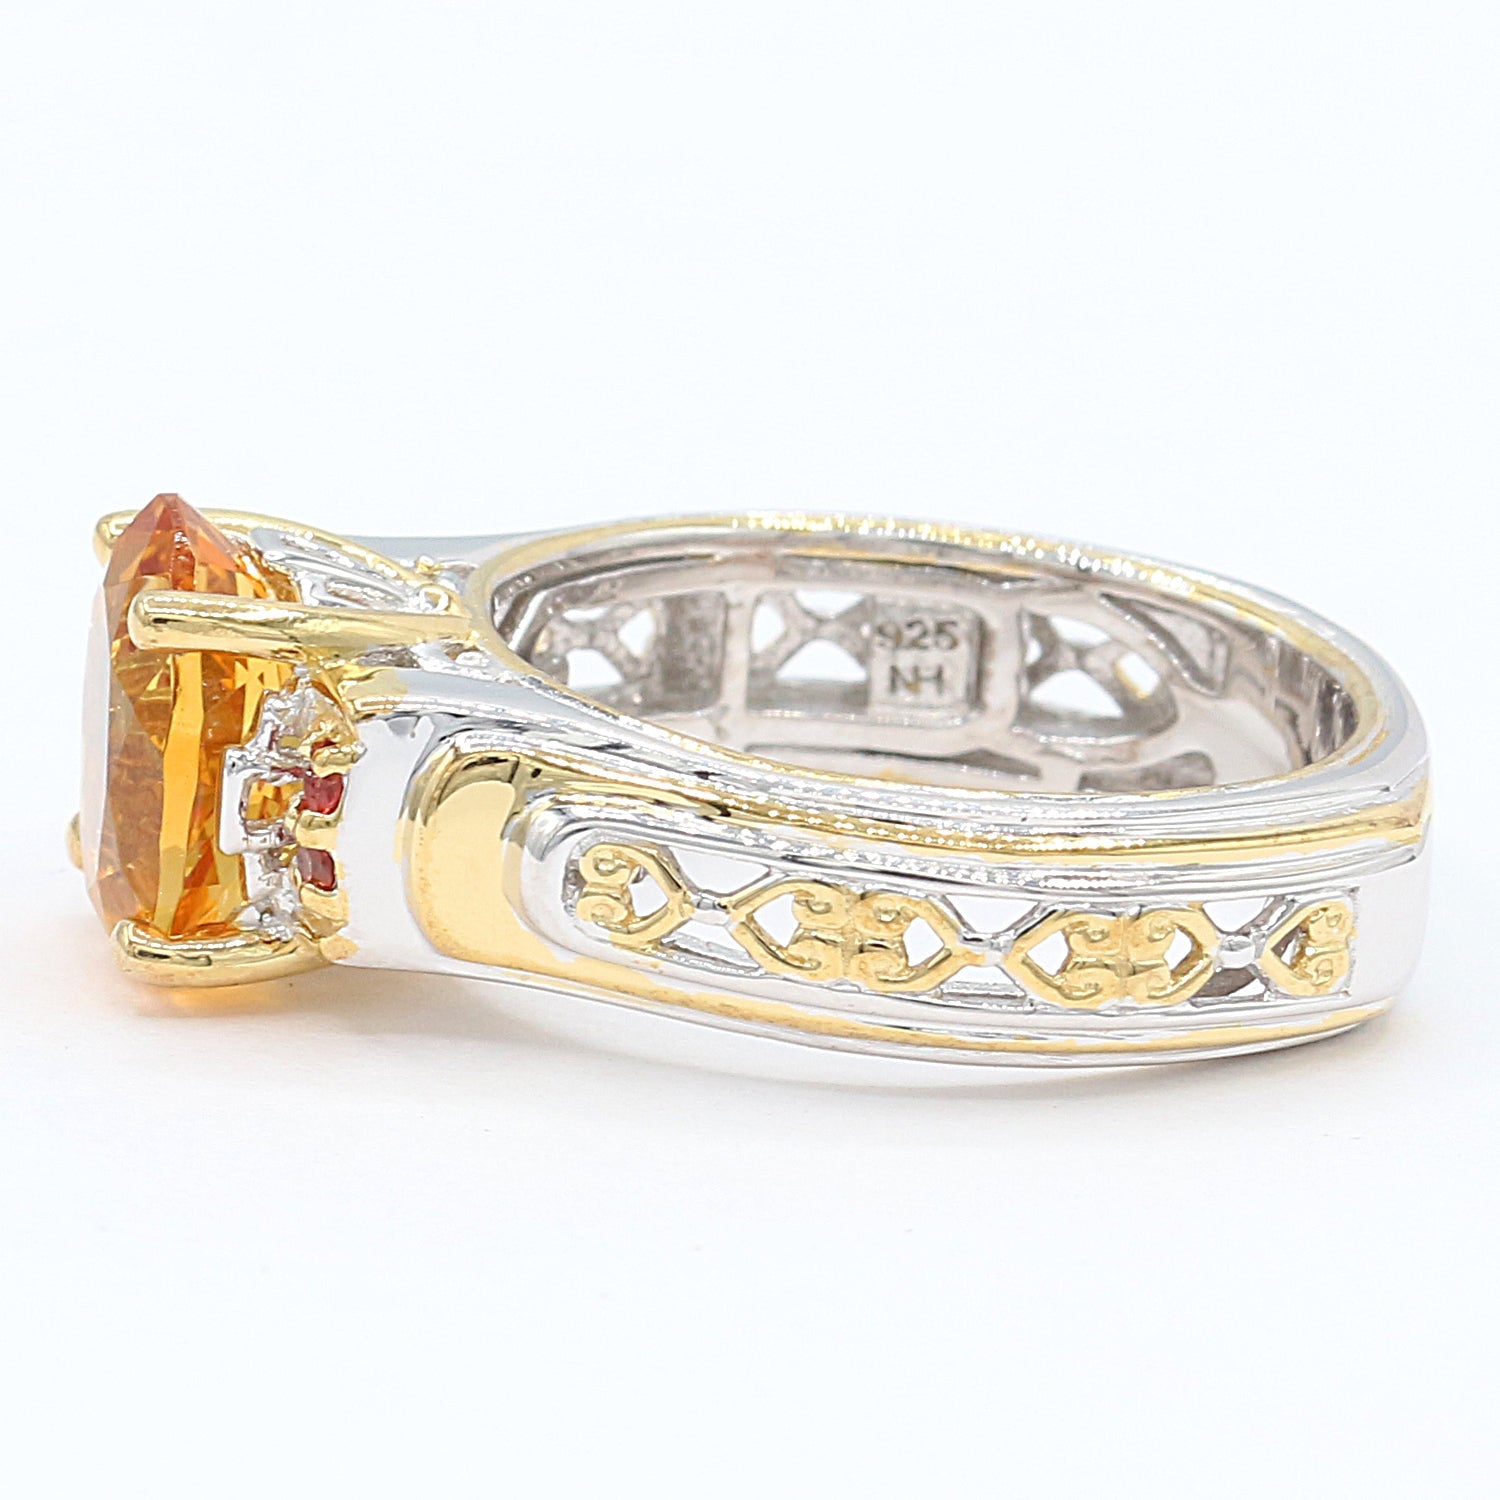 Gems en Vogue 2.51ctw Golden Citrine & Dark Orange Sapphire Ring